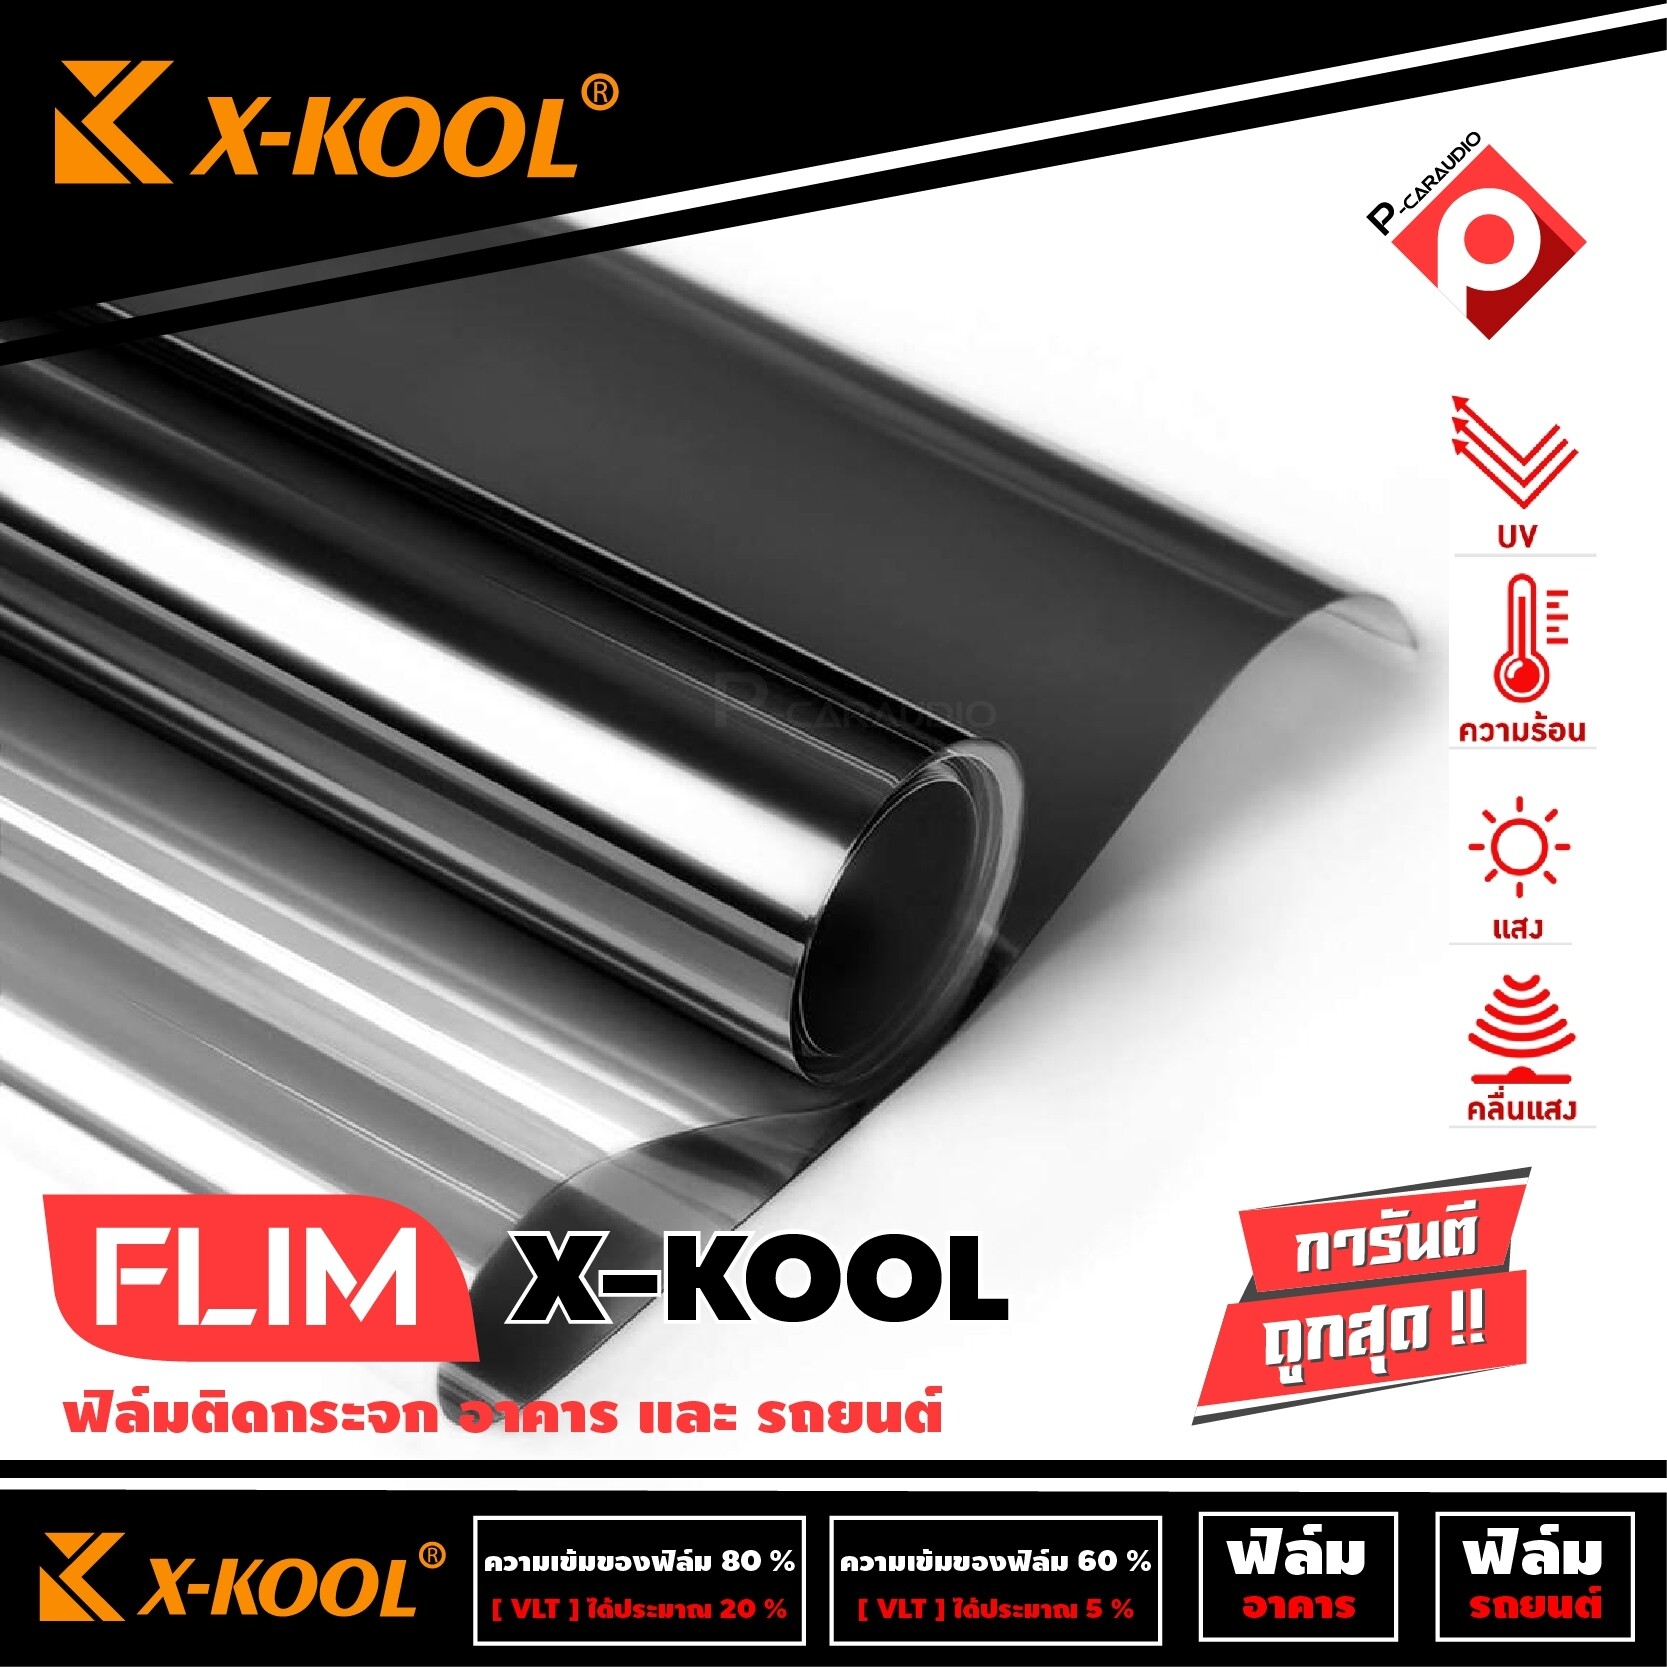 FLIM X- KOOL ฟิล์มกรองแสงยกม้วน ราคา 2460 บาท ฟิมล์ติดรถยนต์ดำ ฟิมล์ติดอาคาร หน้าต่าง ประตู 40`�% ฟิล์มติดรถยนต์ ฟิล์มกันความร้อน